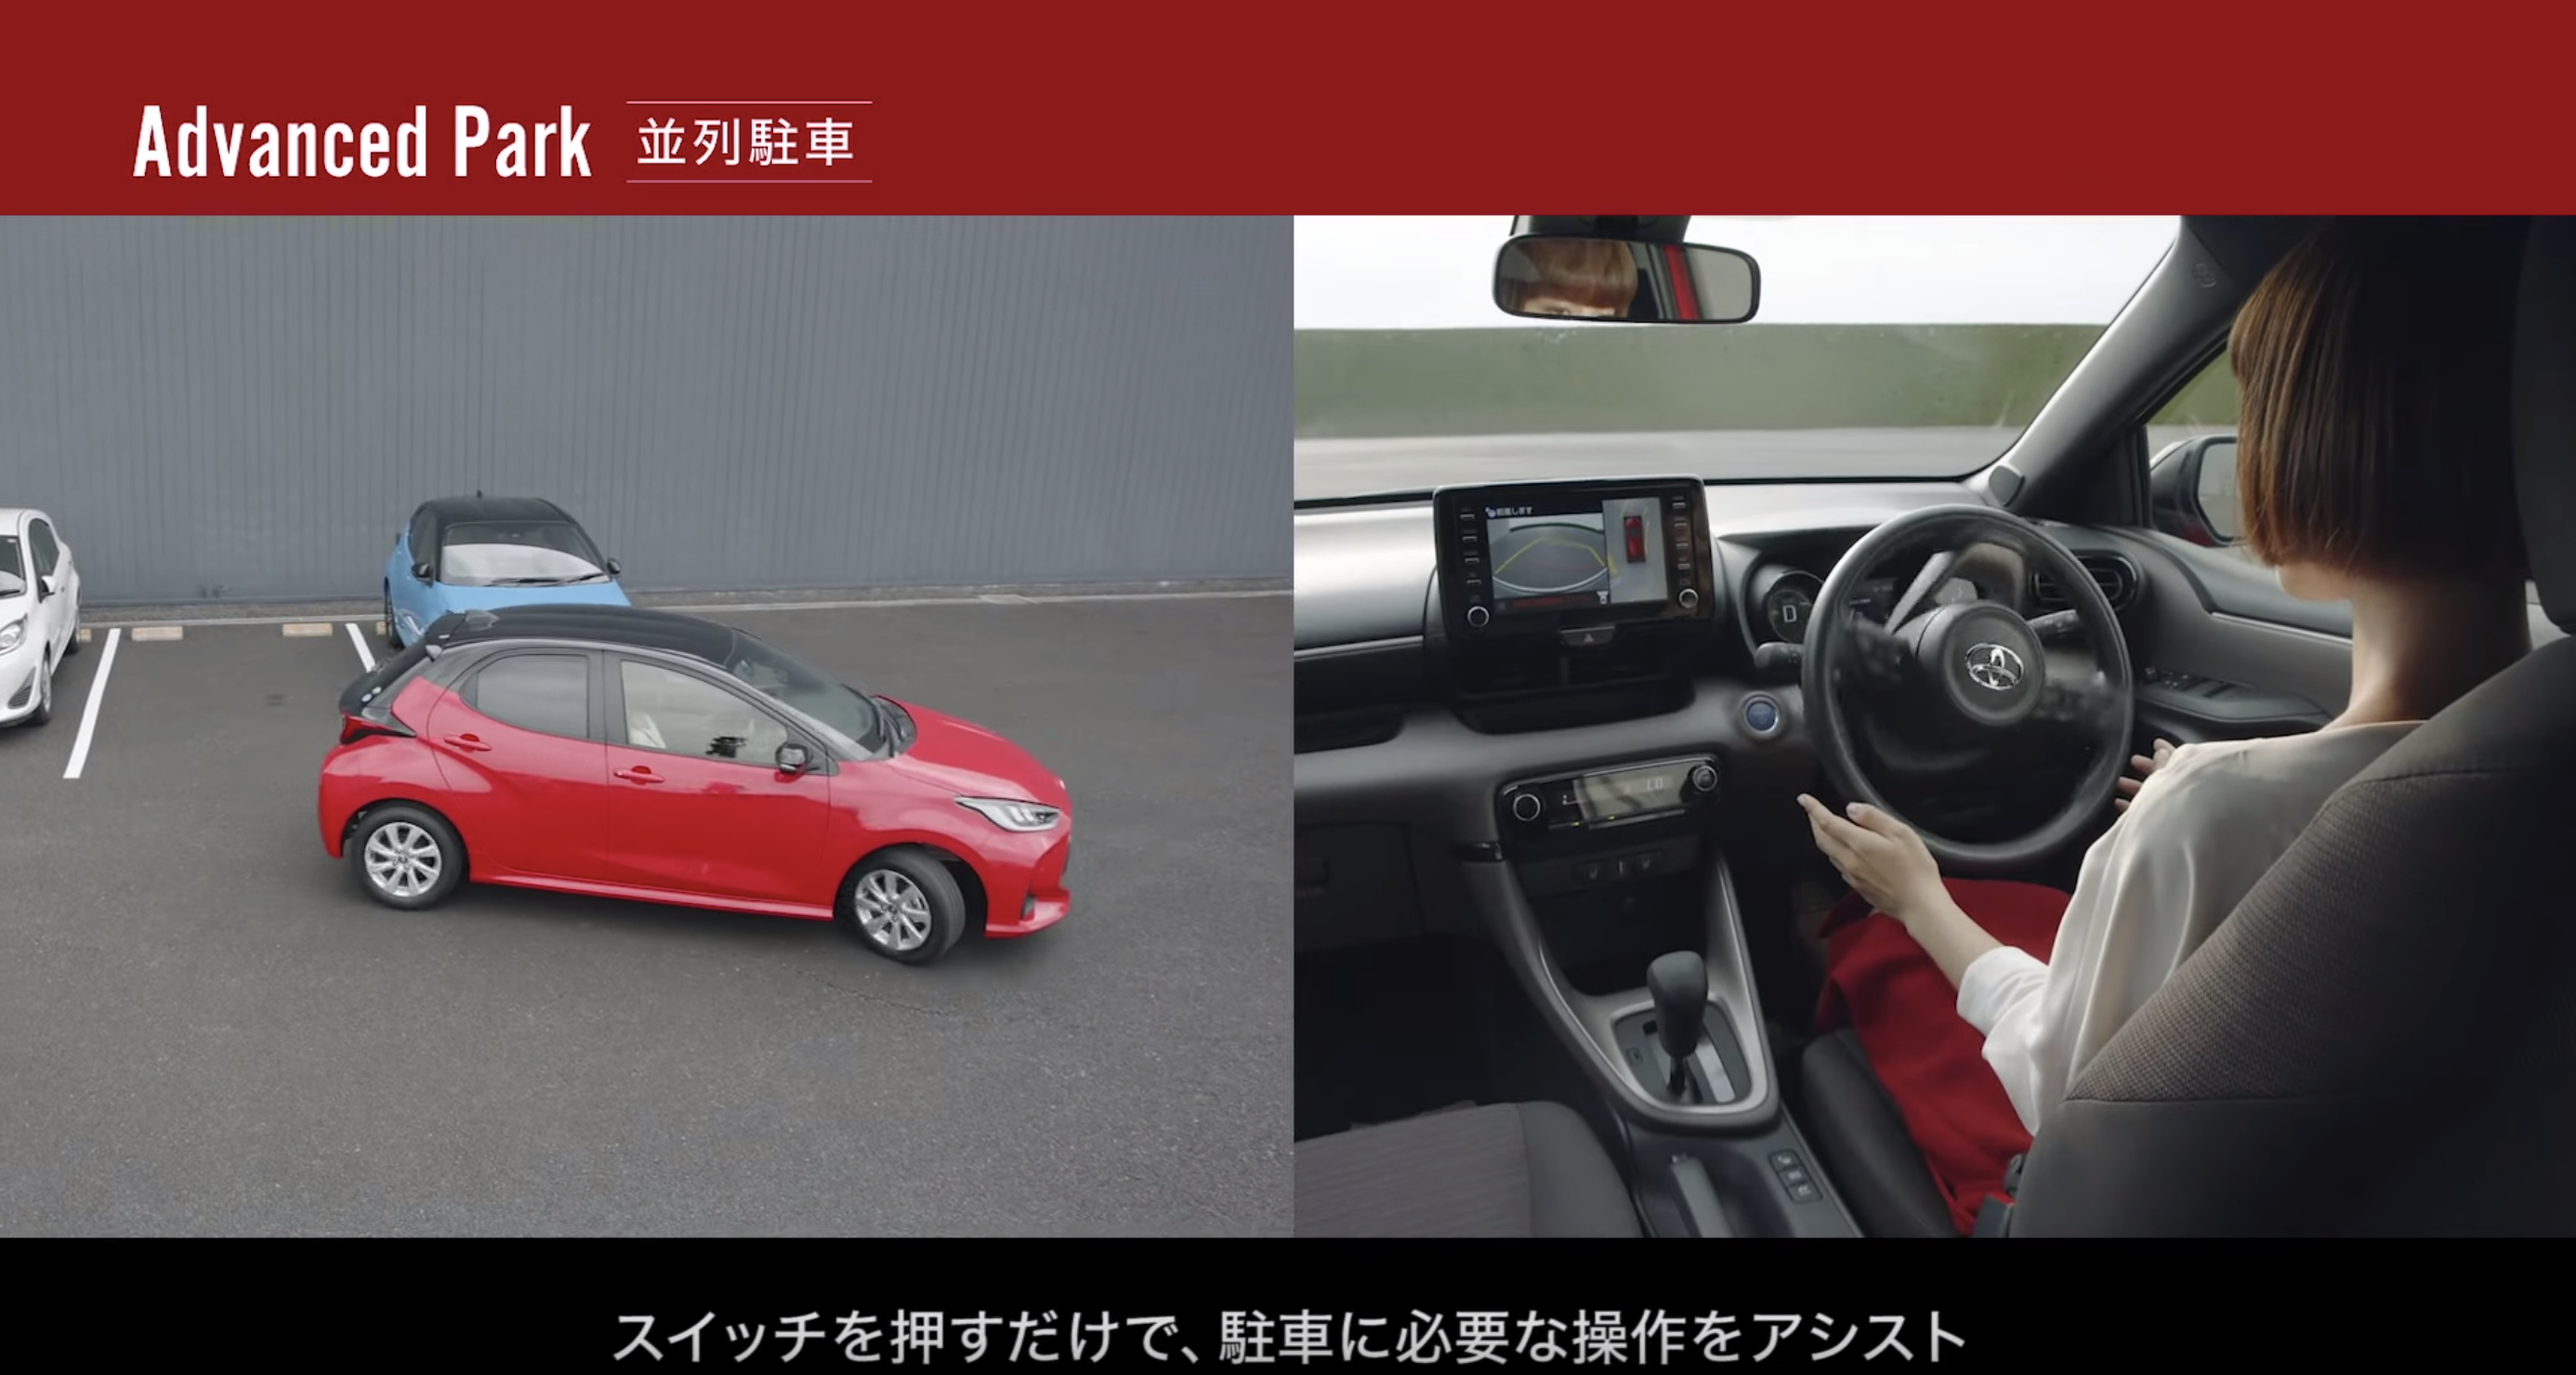 わずか3500回再生 もっとバズるべきトヨタの自動駐車動画 センサーを活用したai自動運転技術 自動運転ラボ